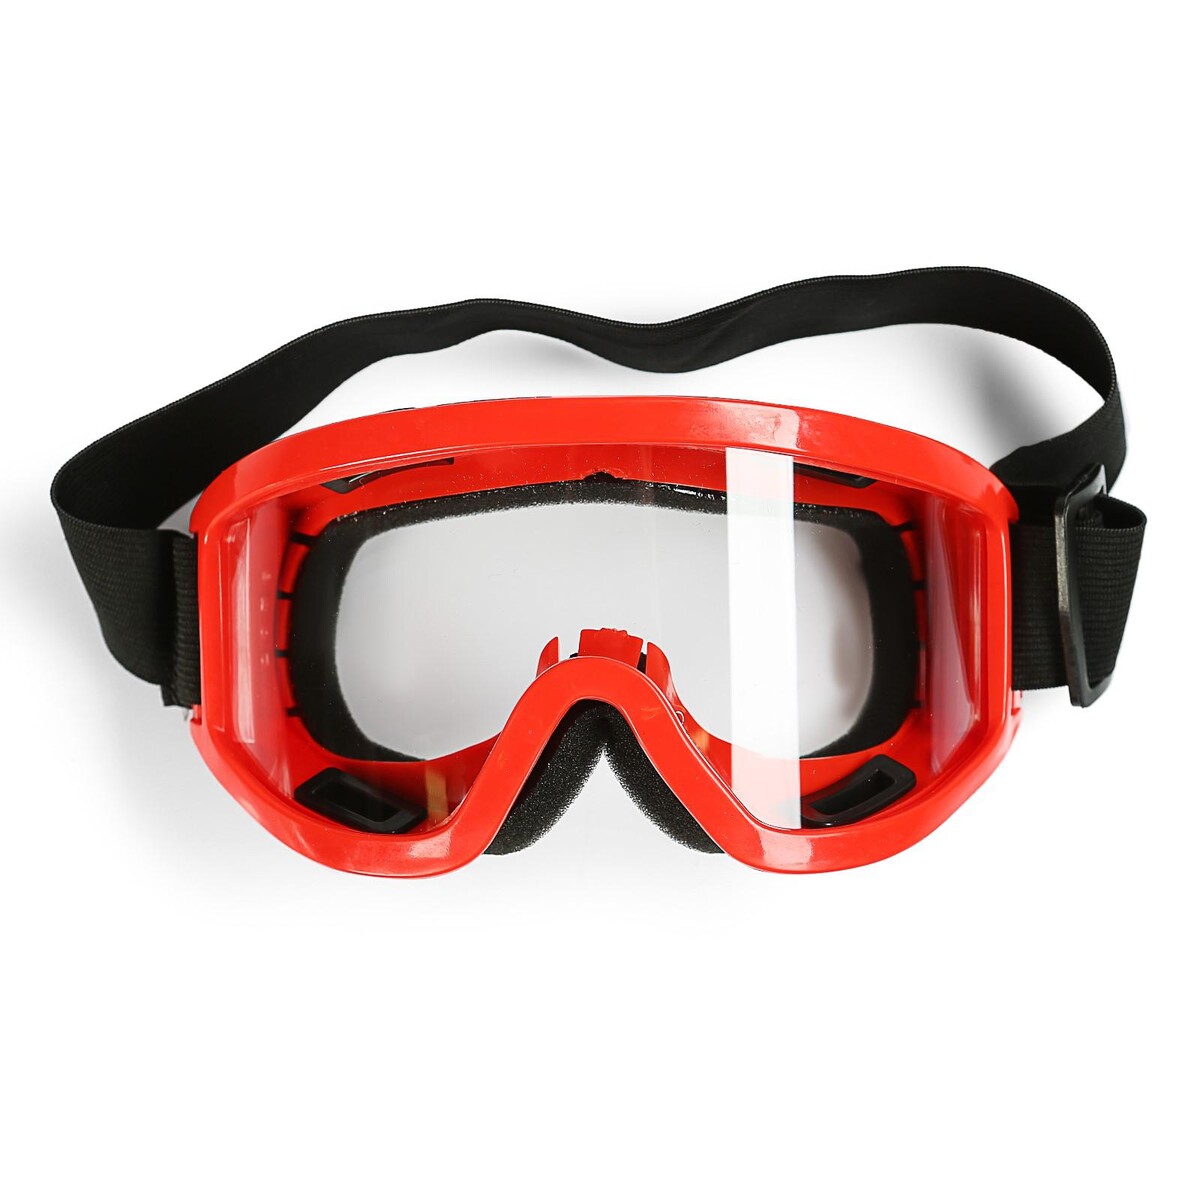 Очки-маска для езды на мототехнике, стекло прозрачное, цвет красный маска для плавания salvas geo md mask ca140s1rysth красный